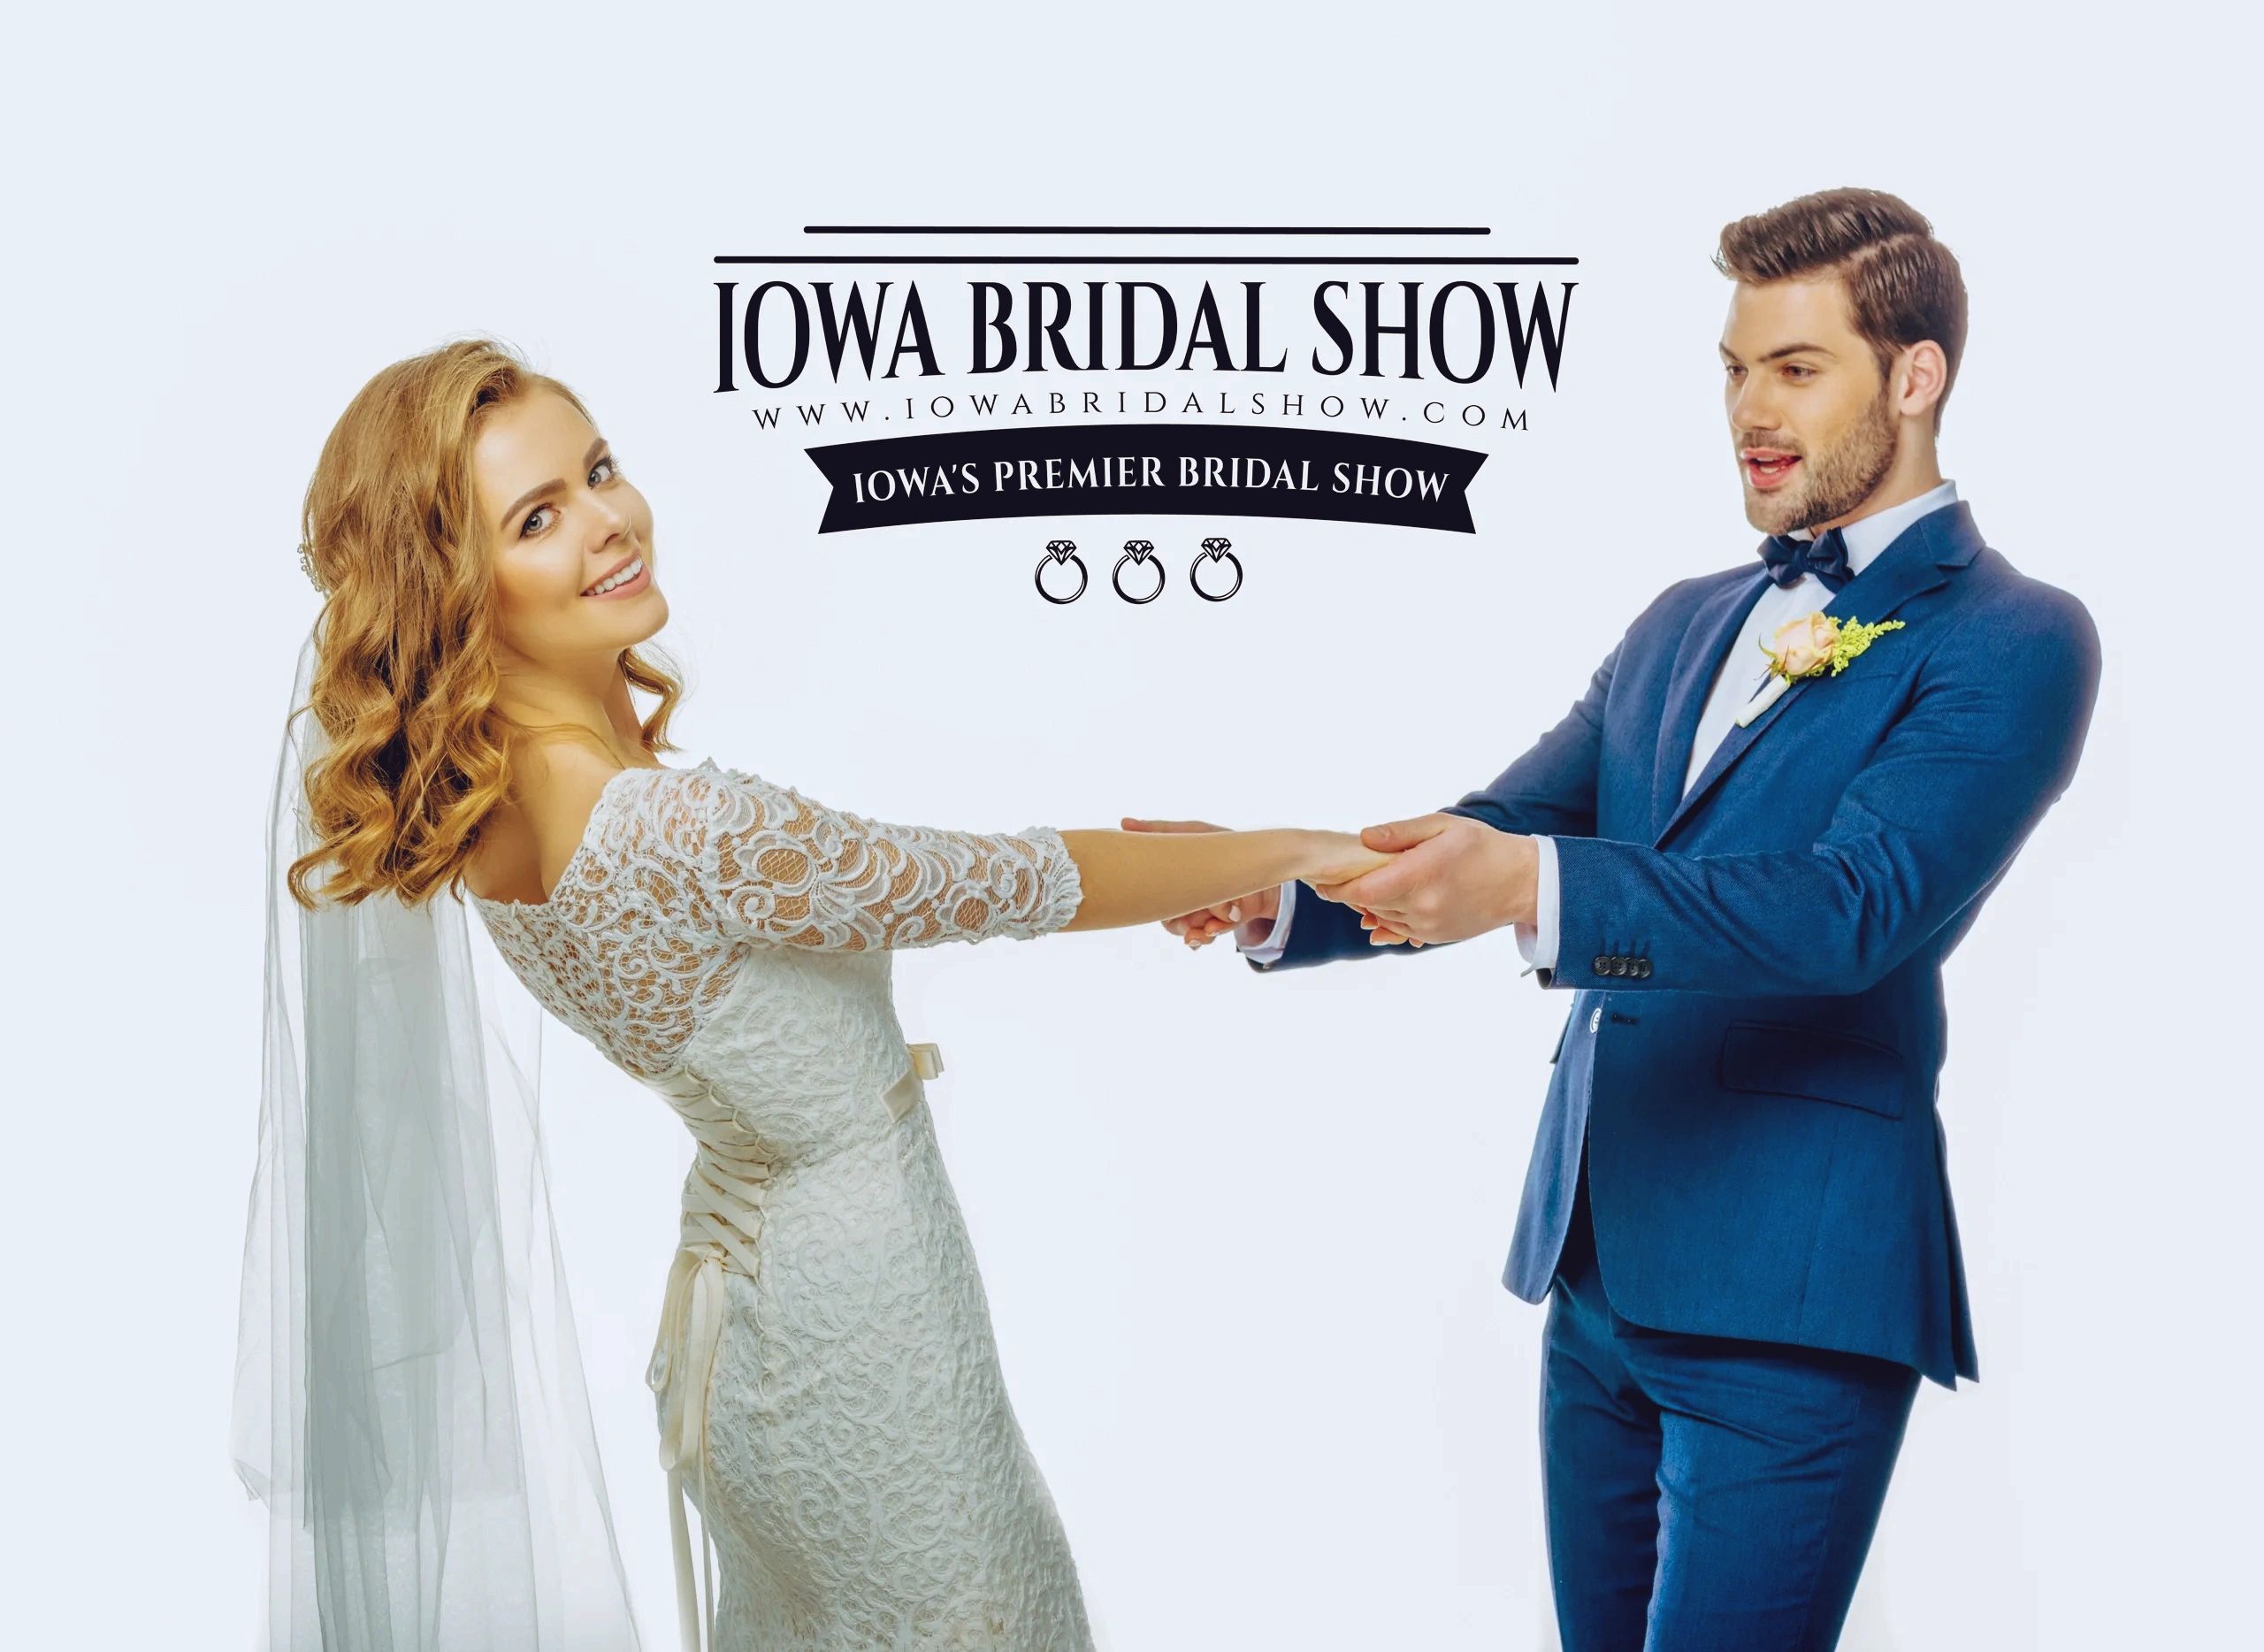 Iowa Bridal Show Iowa Bridal Show, Iowa Wedding Shows in West Des